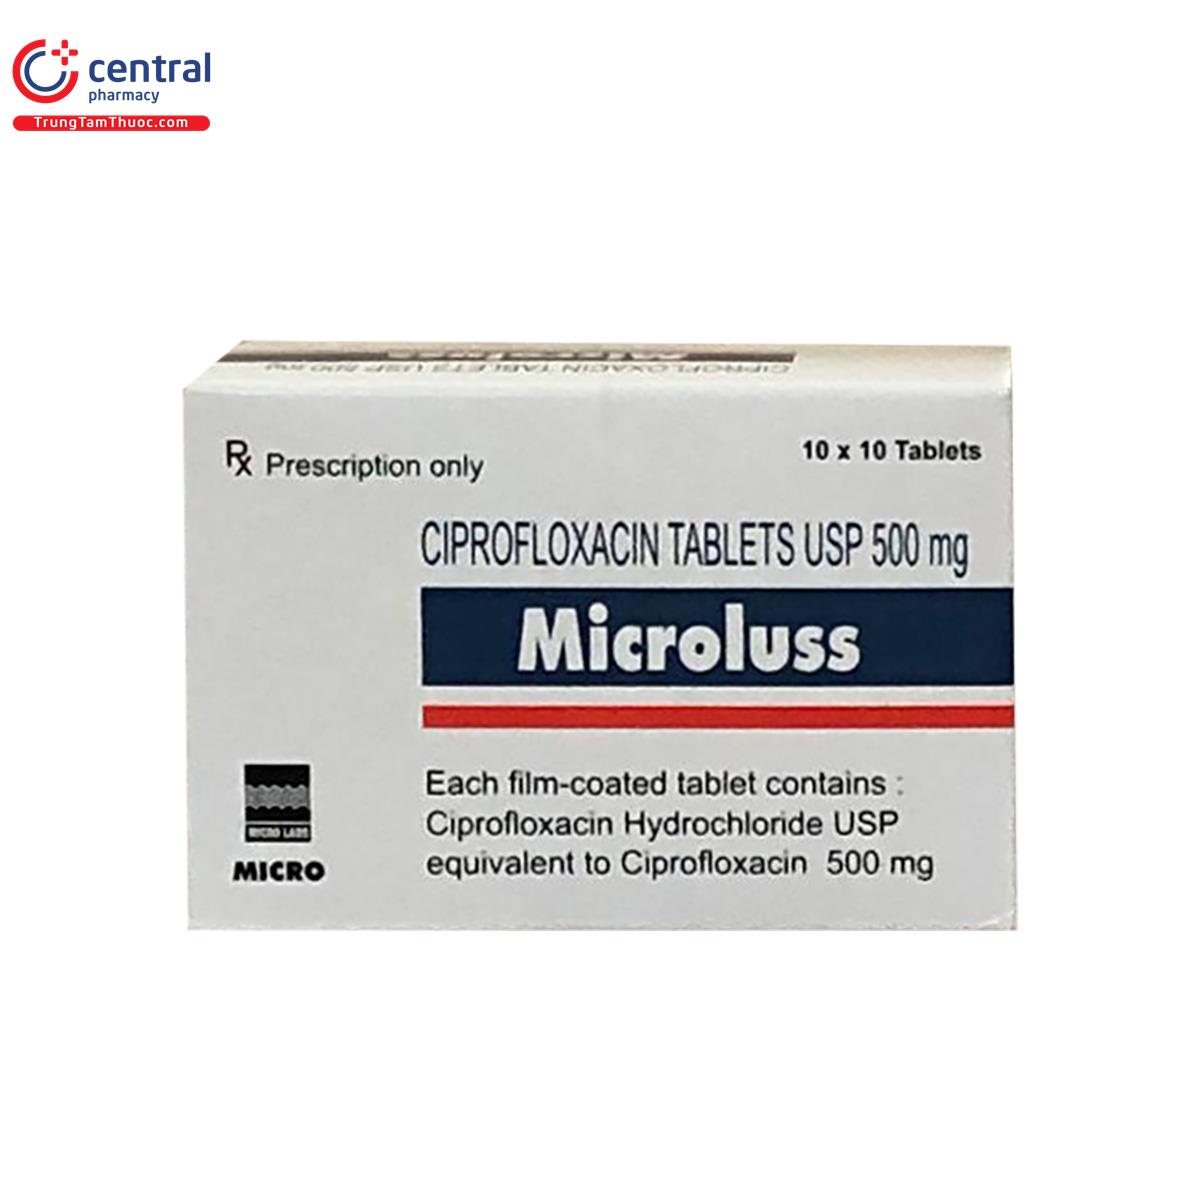 microluss 2 L4604